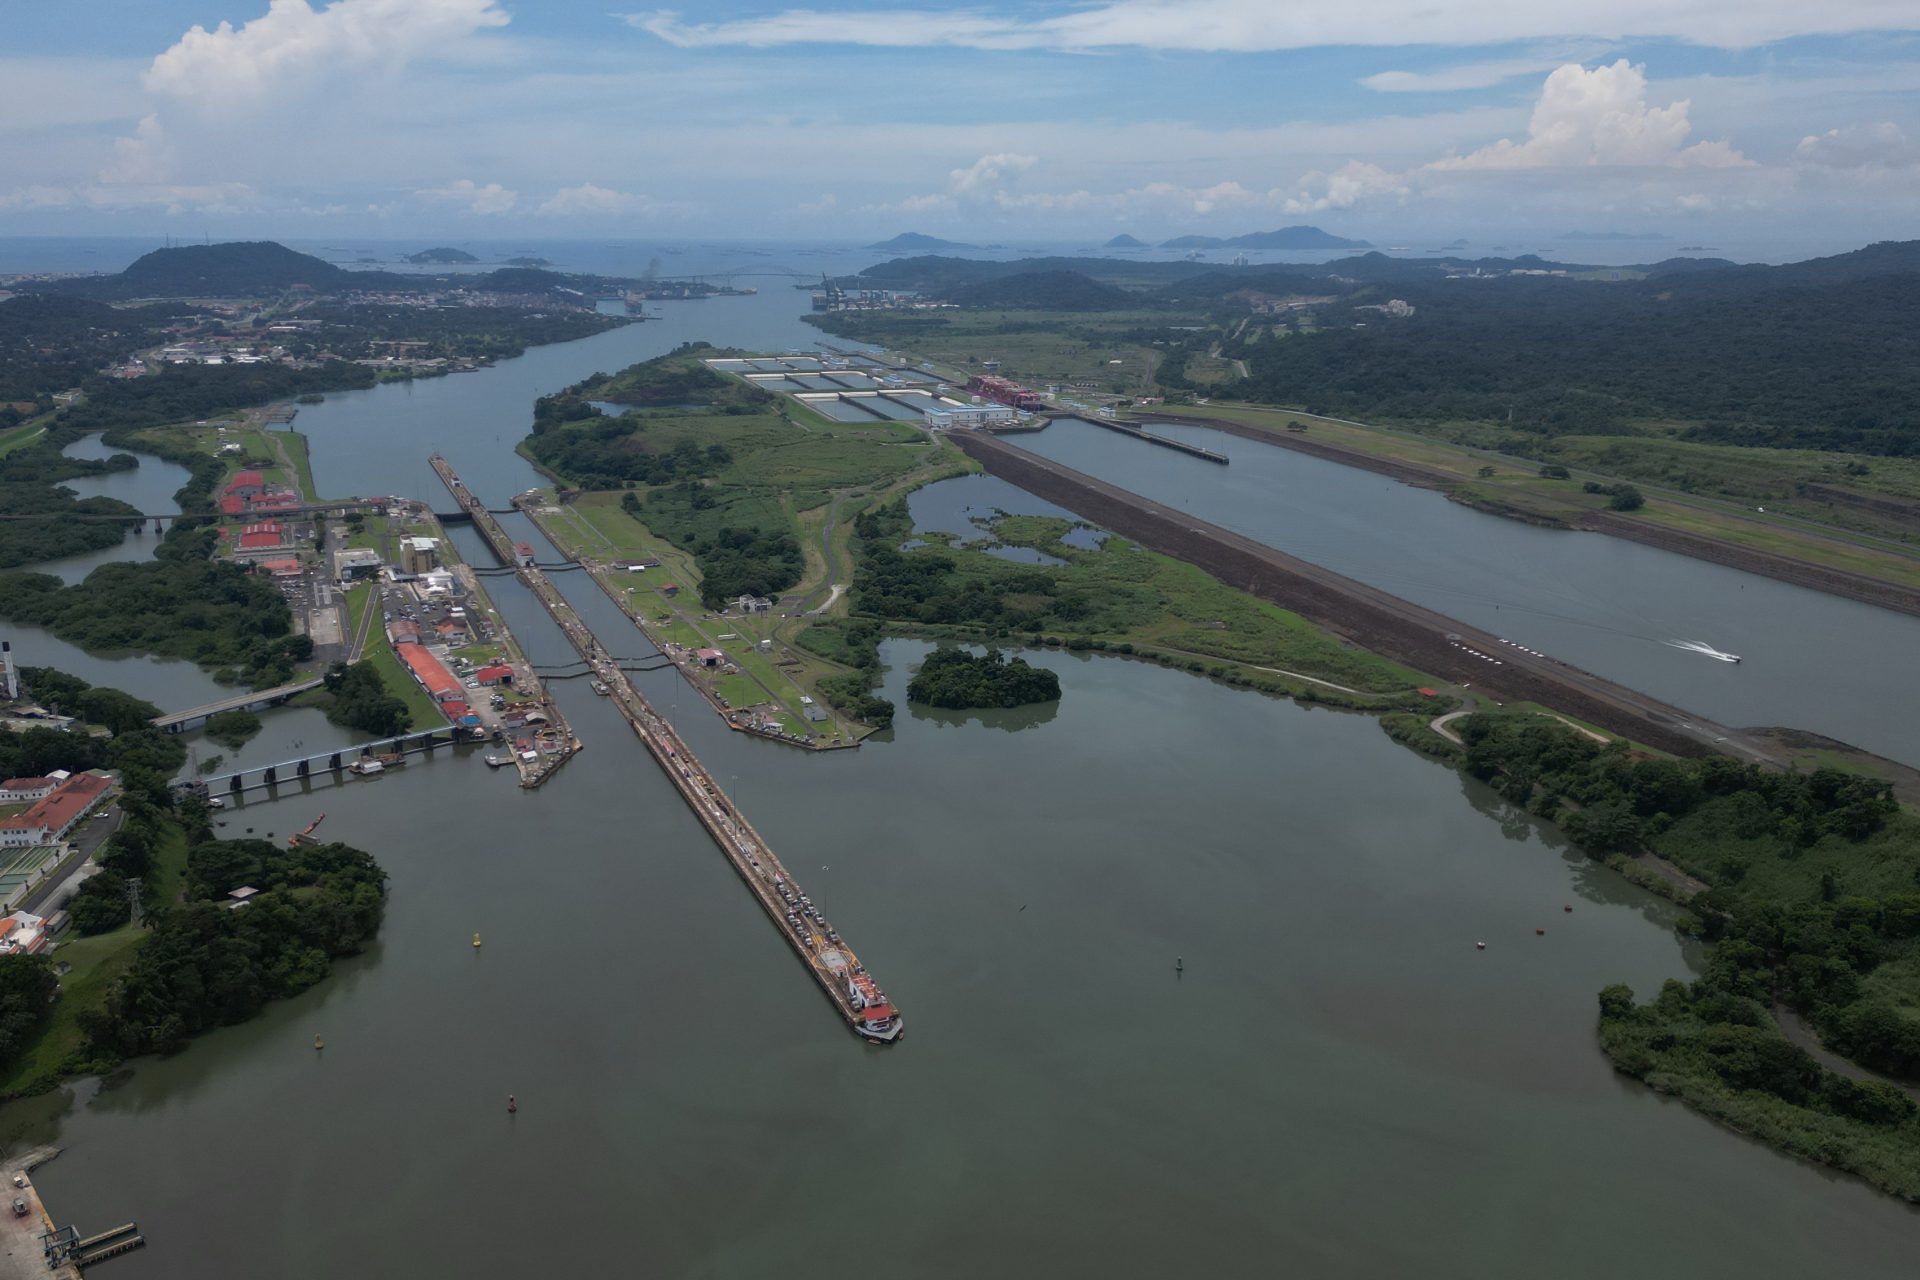 Canal de Panama : voici comment la sècheresse pourrait affecter l'économie... et votre portefeuille